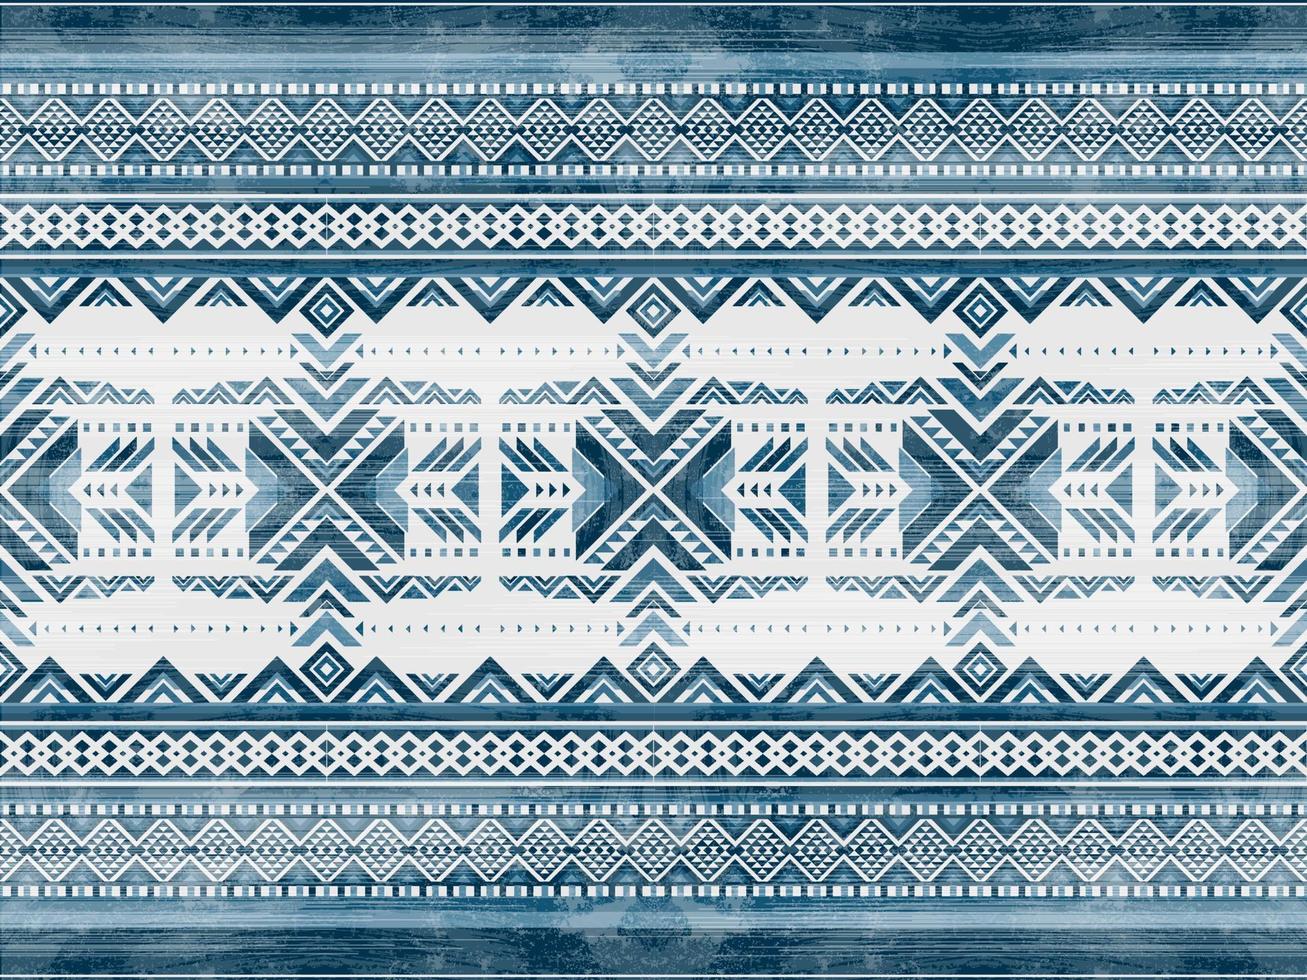 amérindien indien ornement motif géométrique ethnique textile texture tribal motif aztèque navajo mexicain tissu continu vecteur décoration mode